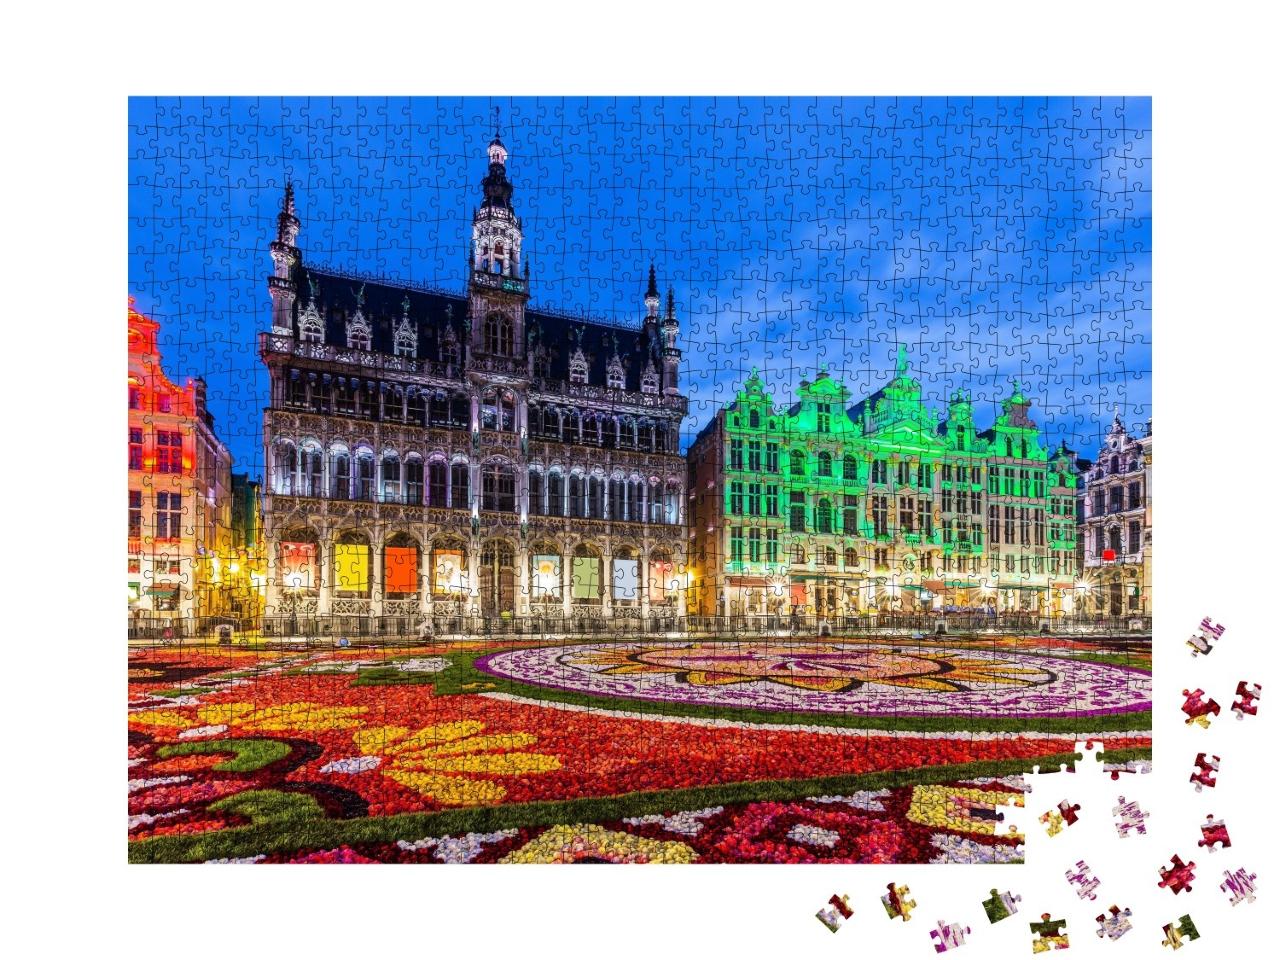 Puzzle de 1000 pièces « Festival des tapis de fleurs à Bruxelles, Belgique »